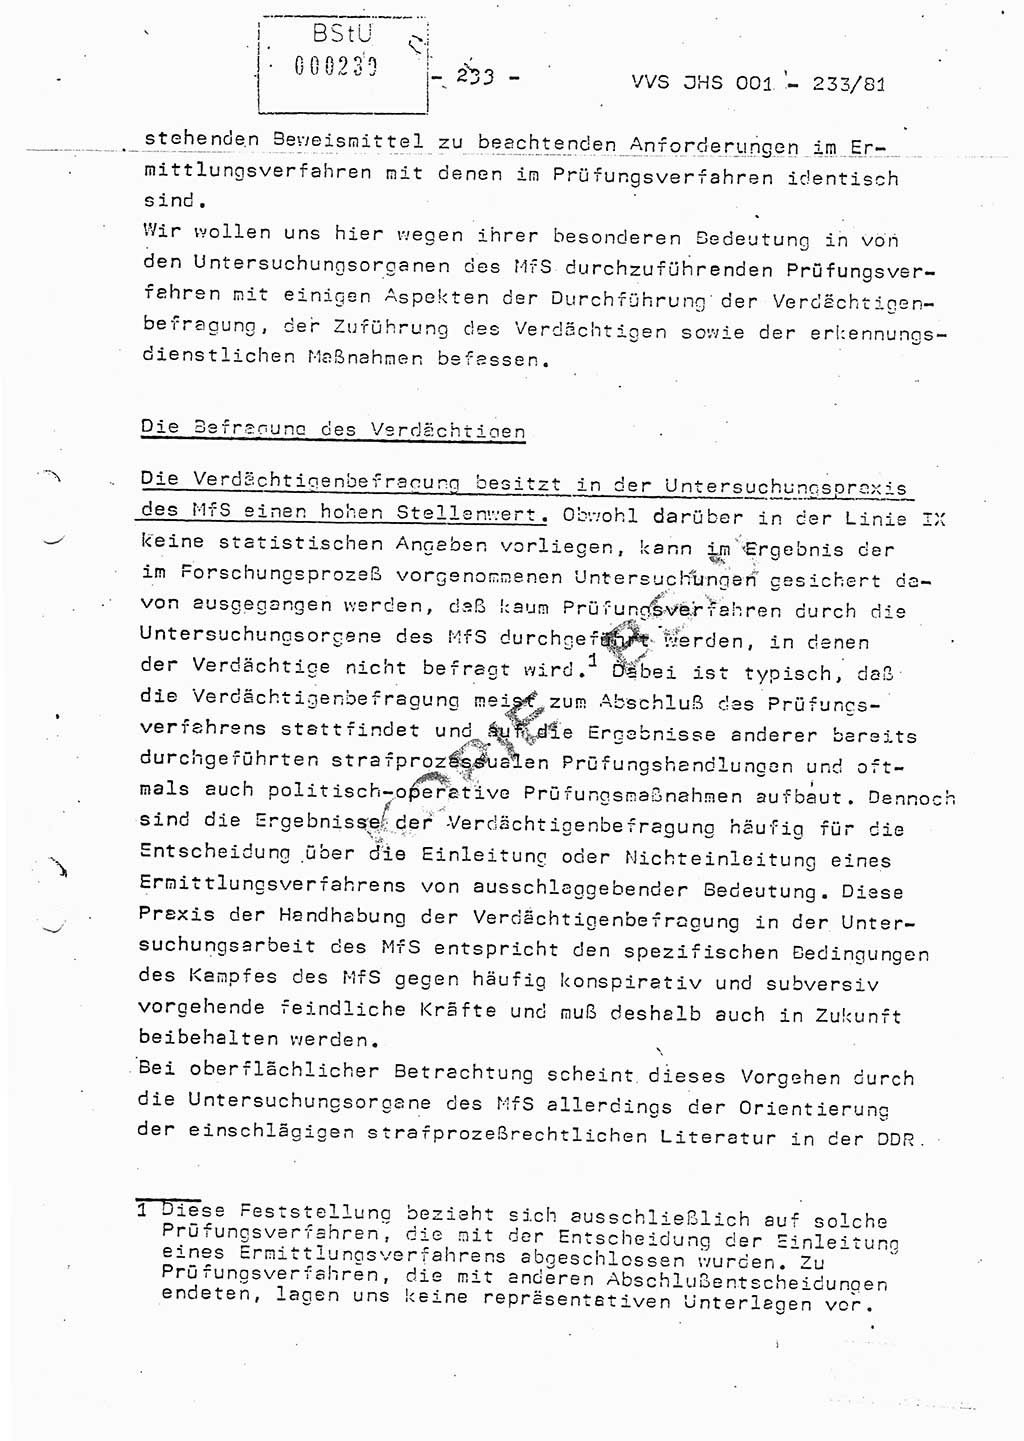 Dissertation Oberstleutnant Horst Zank (JHS), Oberstleutnant Dr. Karl-Heinz Knoblauch (JHS), Oberstleutnant Gustav-Adolf Kowalewski (HA Ⅸ), Oberstleutnant Wolfgang Plötner (HA Ⅸ), Ministerium für Staatssicherheit (MfS) [Deutsche Demokratische Republik (DDR)], Juristische Hochschule (JHS), Vertrauliche Verschlußsache (VVS) o001-233/81, Potsdam 1981, Blatt 233 (Diss. MfS DDR JHS VVS o001-233/81 1981, Bl. 233)